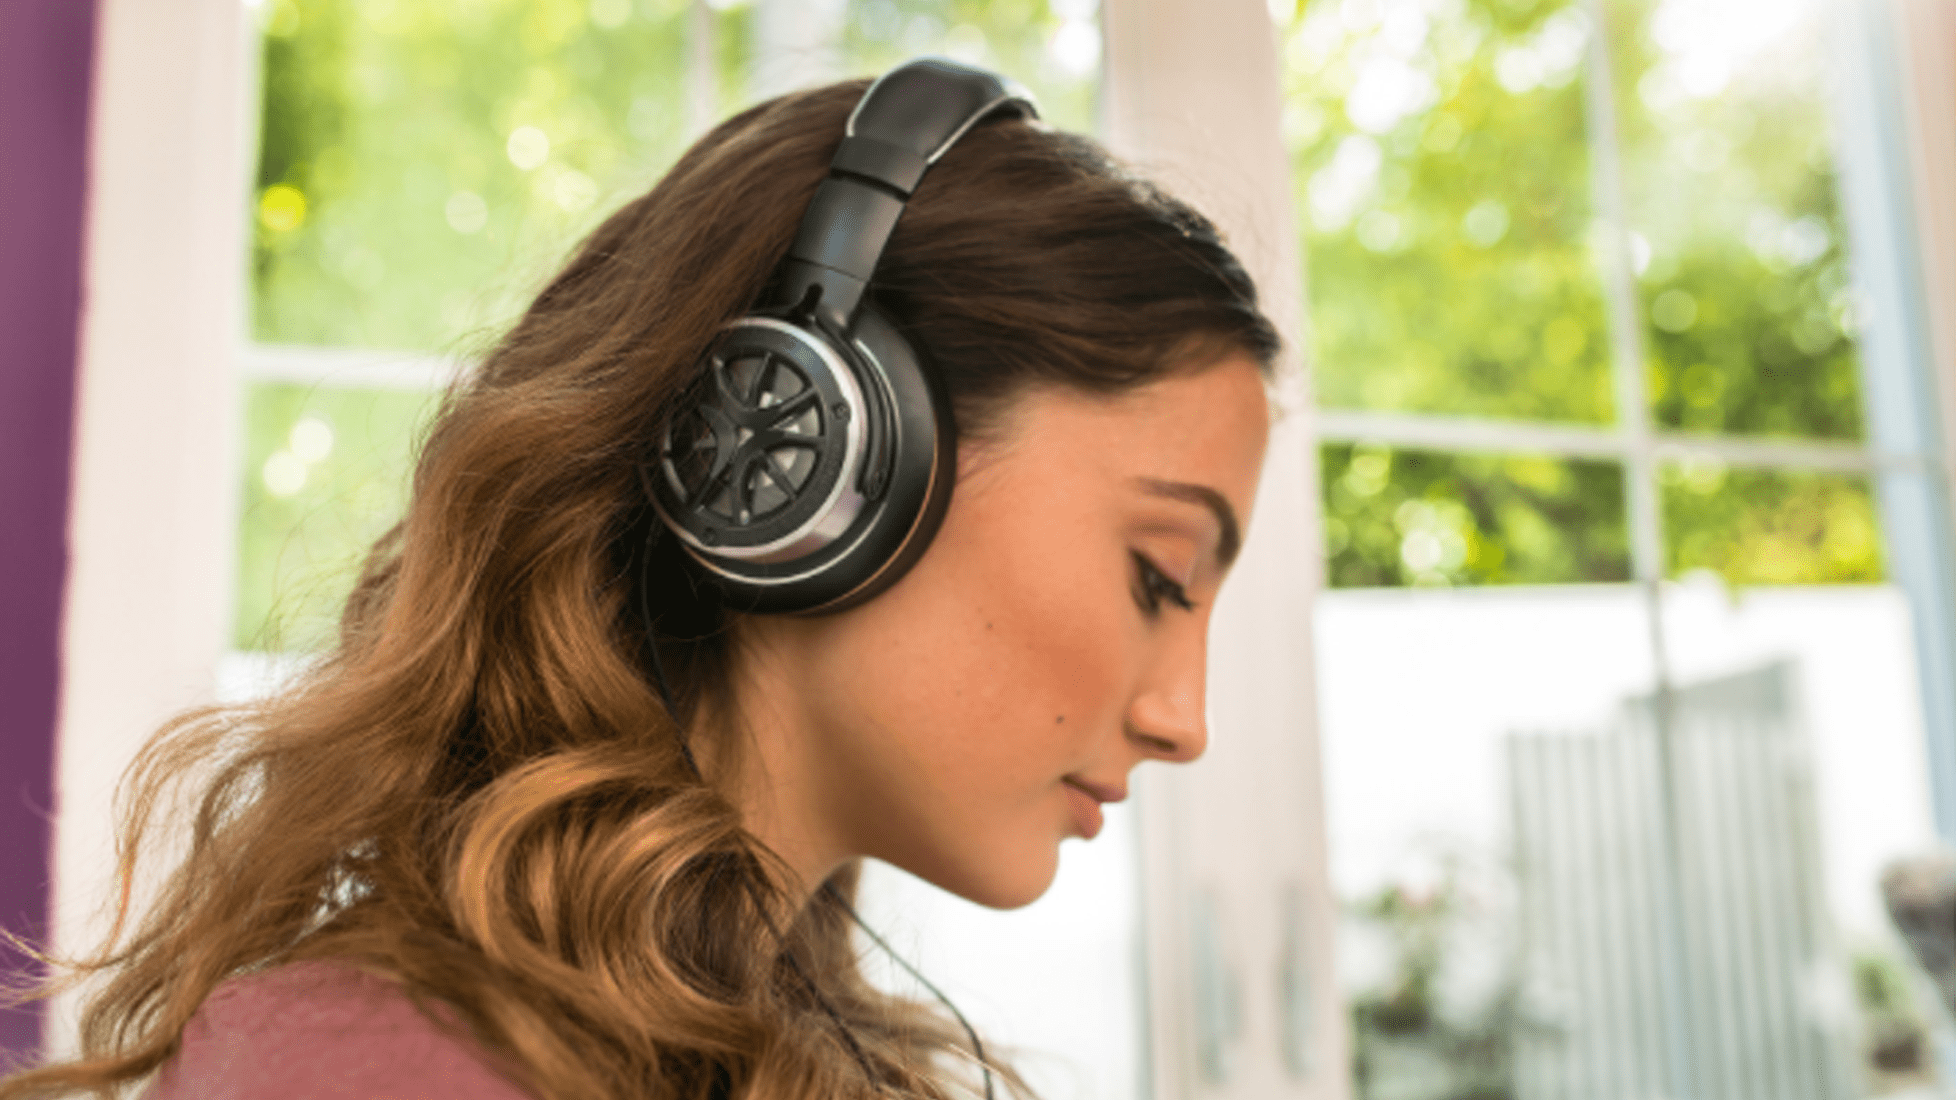 1Fler Over-Ear-hörlurar som erbjuder bra ljud till ett bra pris